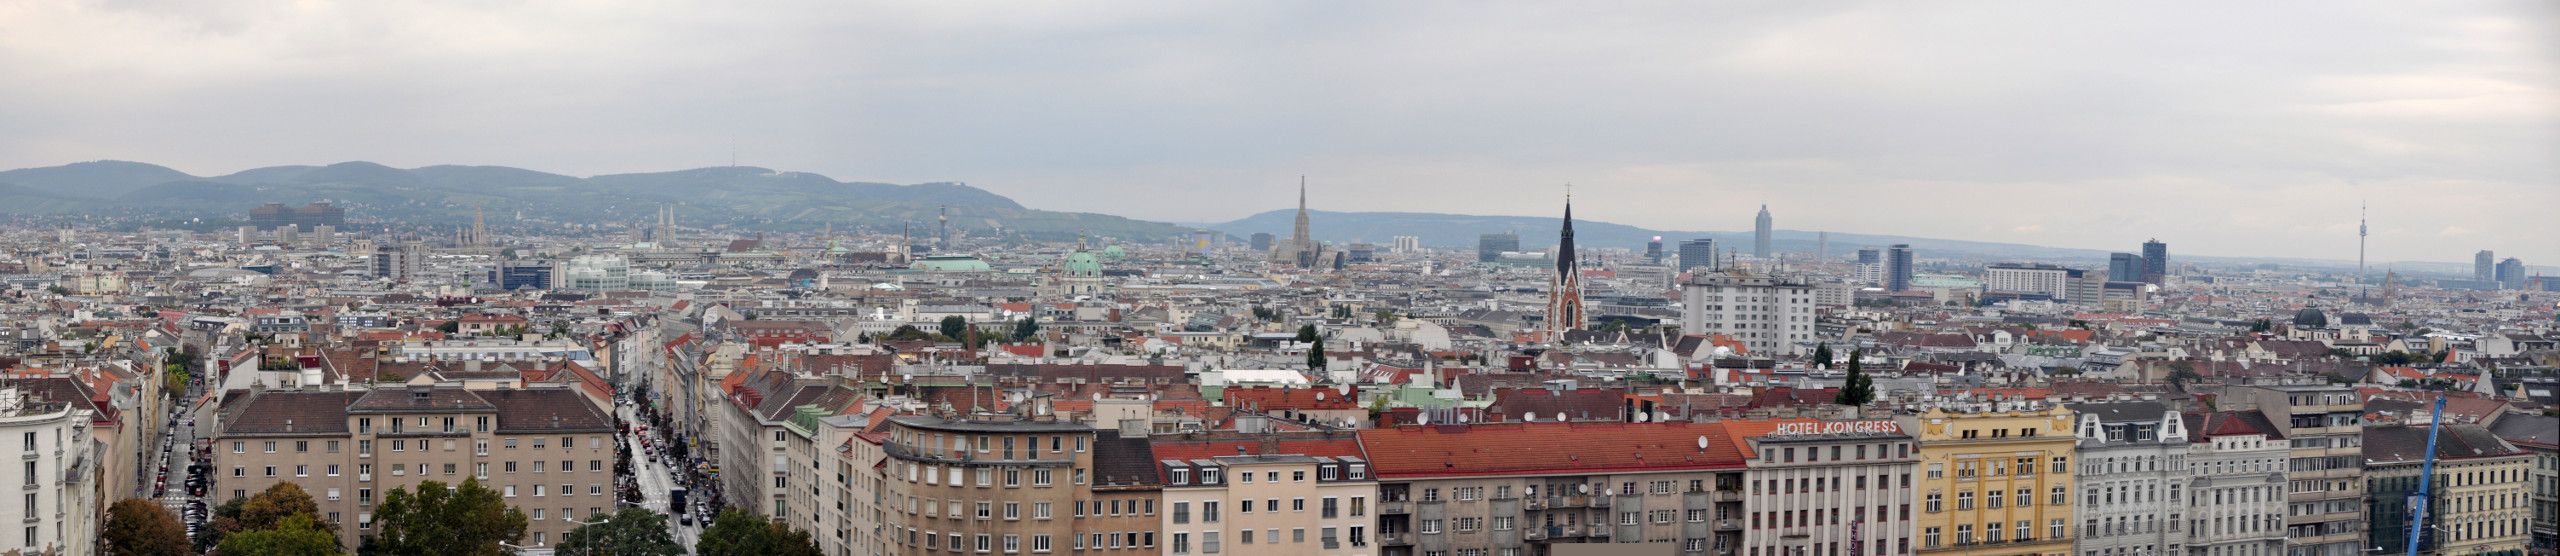  |Und weil ich Panoramen liebe, noch ein Wiener Stadtpanorama